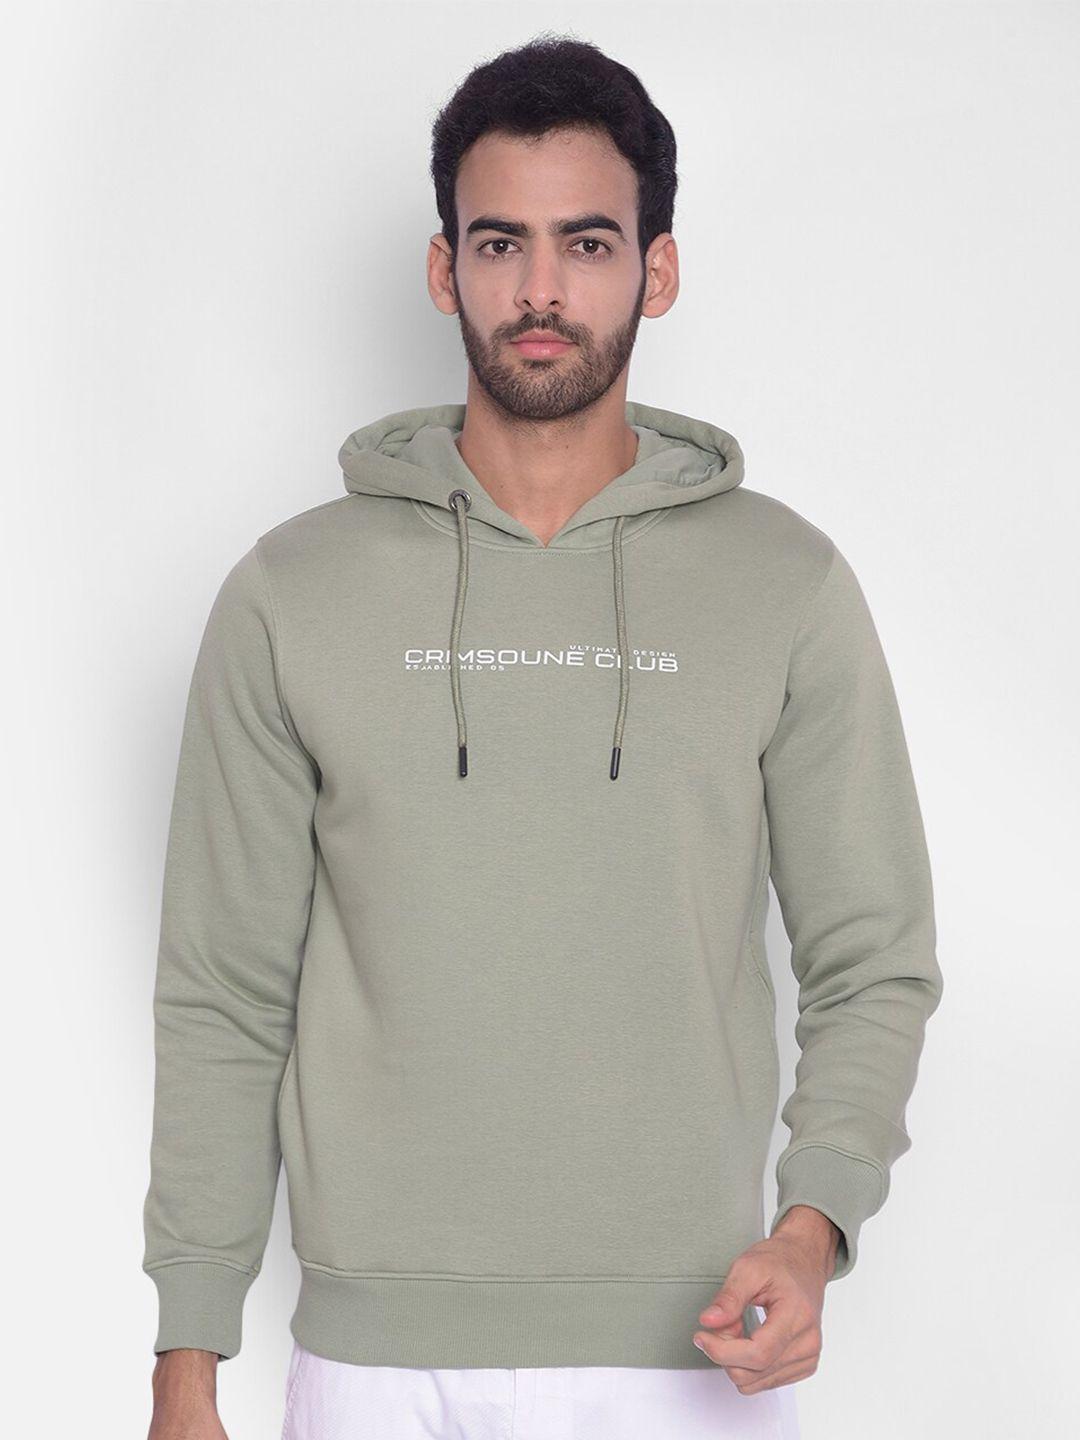 crimsoune club typography printed hooded sweatshirt